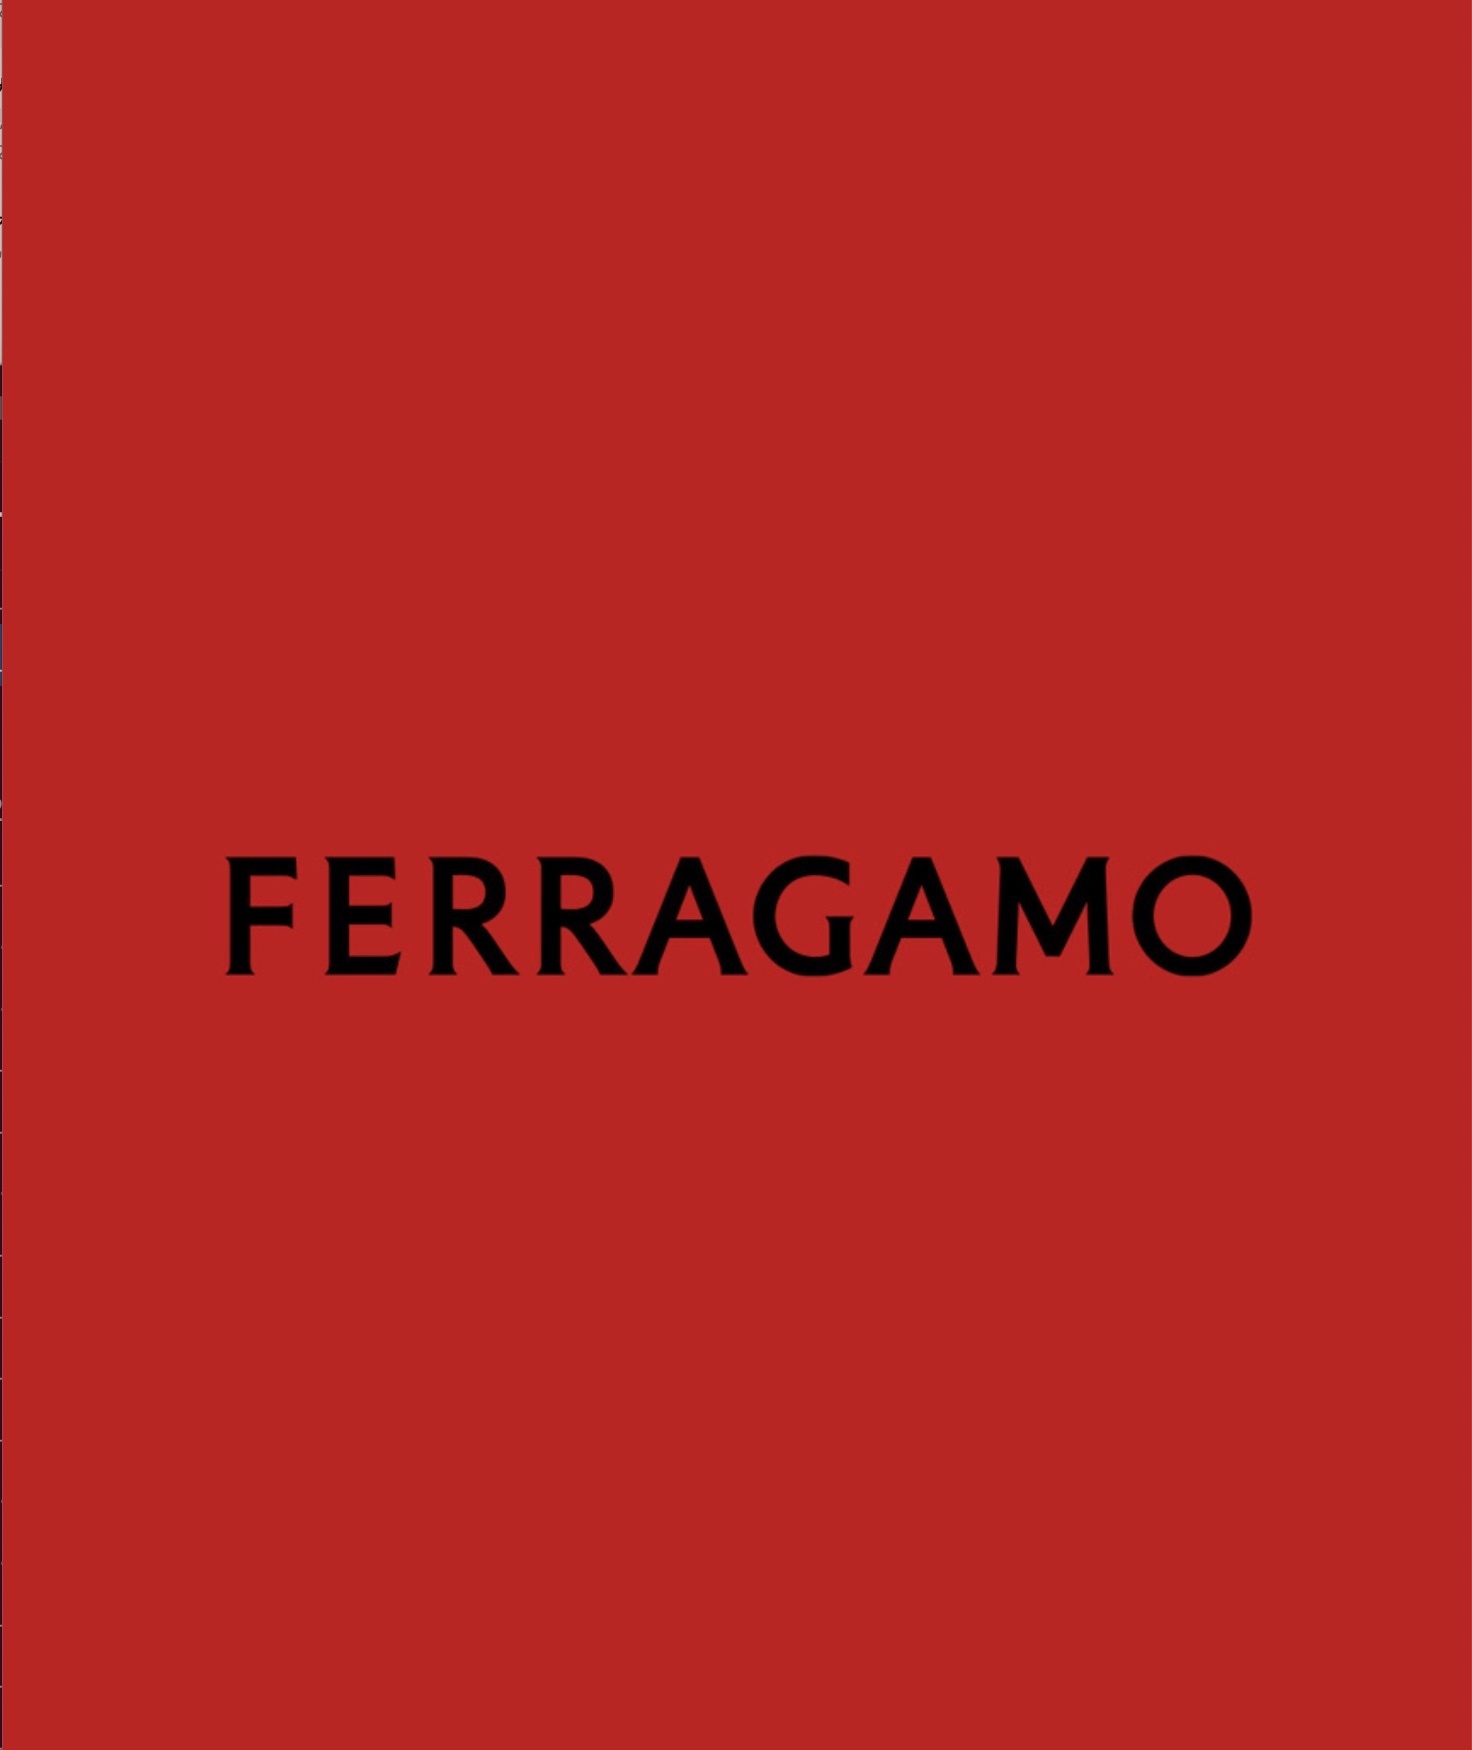 フェラガモ」がロゴ刷新、新ディレクターによるデビューコレクション発表へ